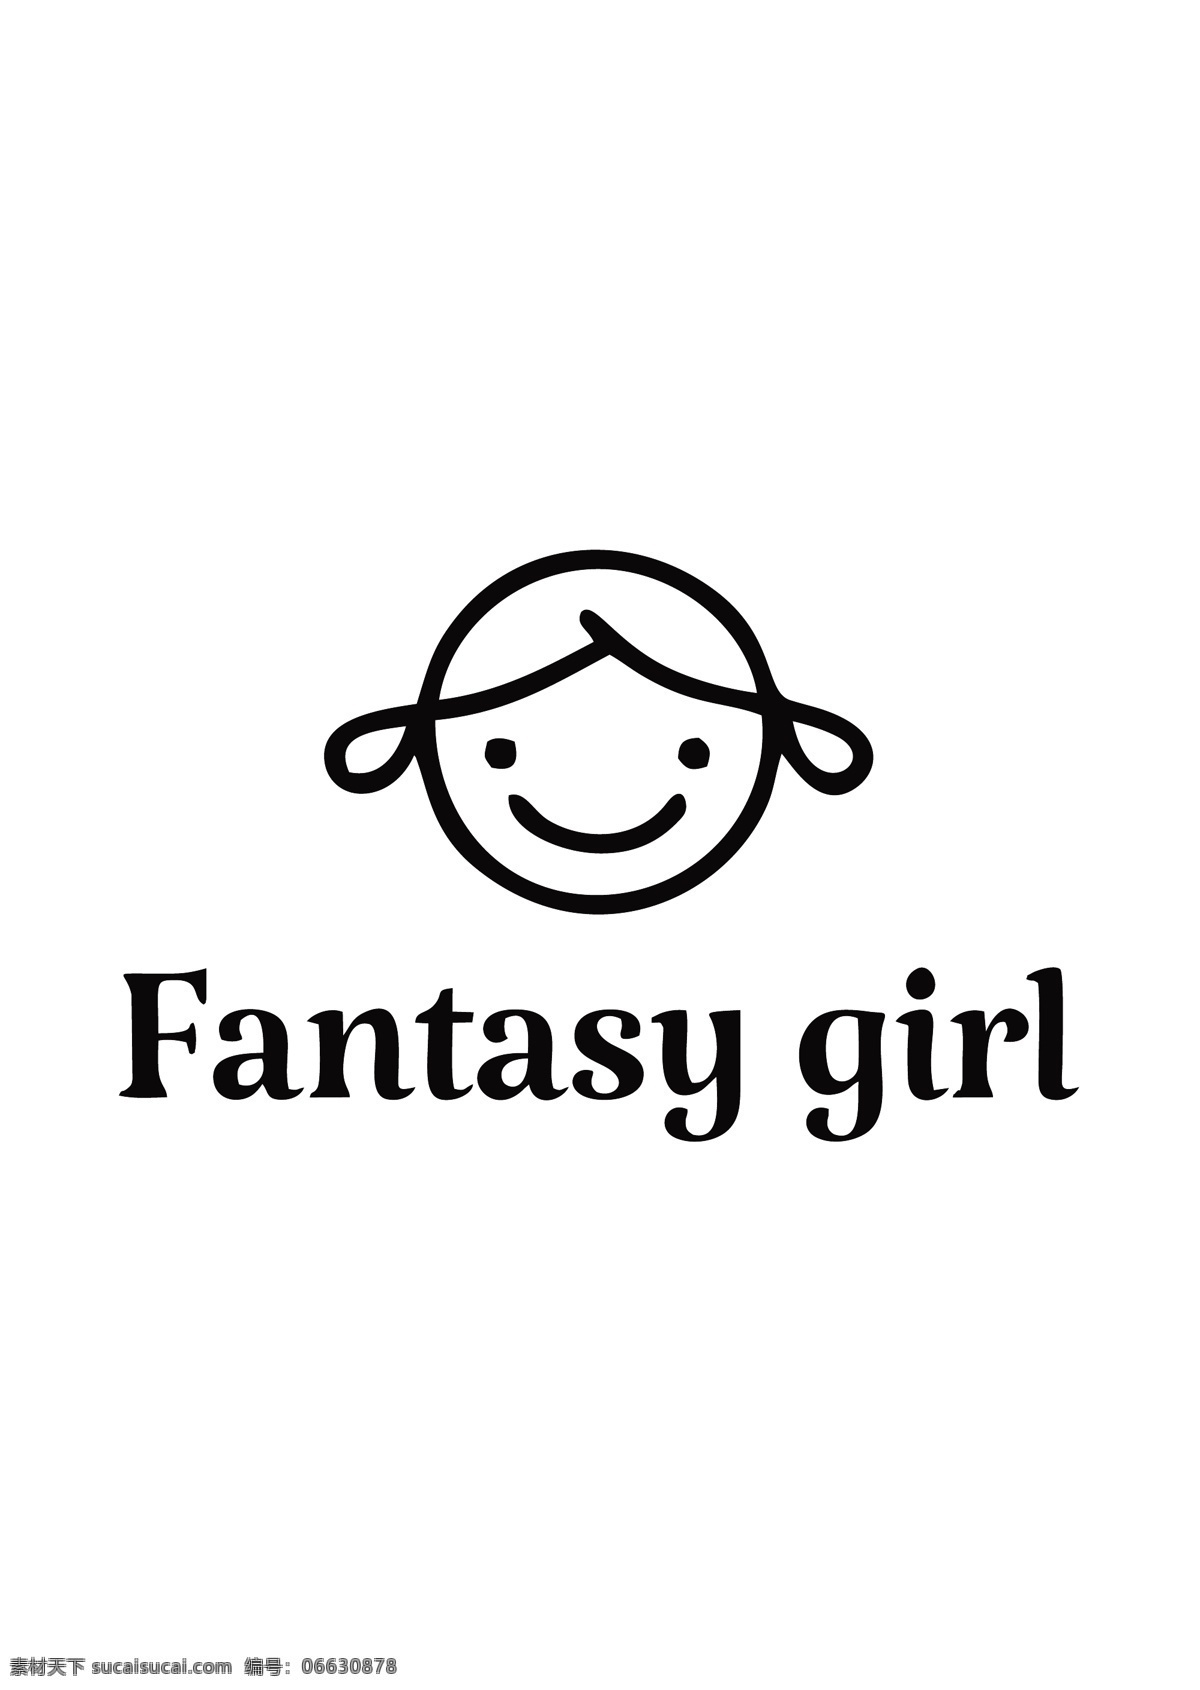 可爱 卡通 女孩 logo logo设计 标识设计 线条logo ai矢量